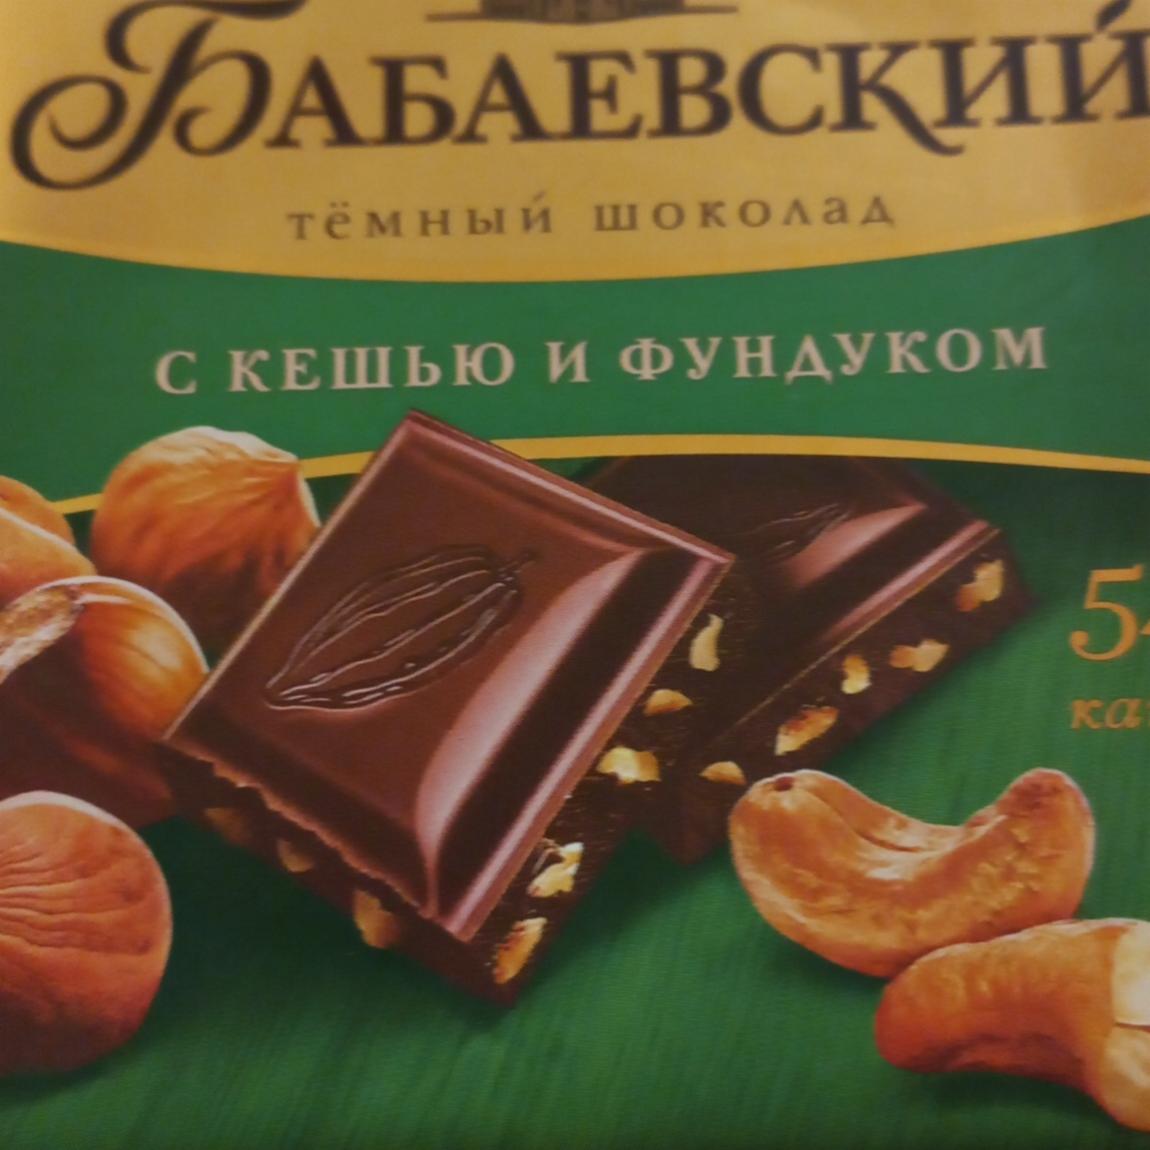 Фото - Шоколад темный с кешью и фундуком Бабаевский